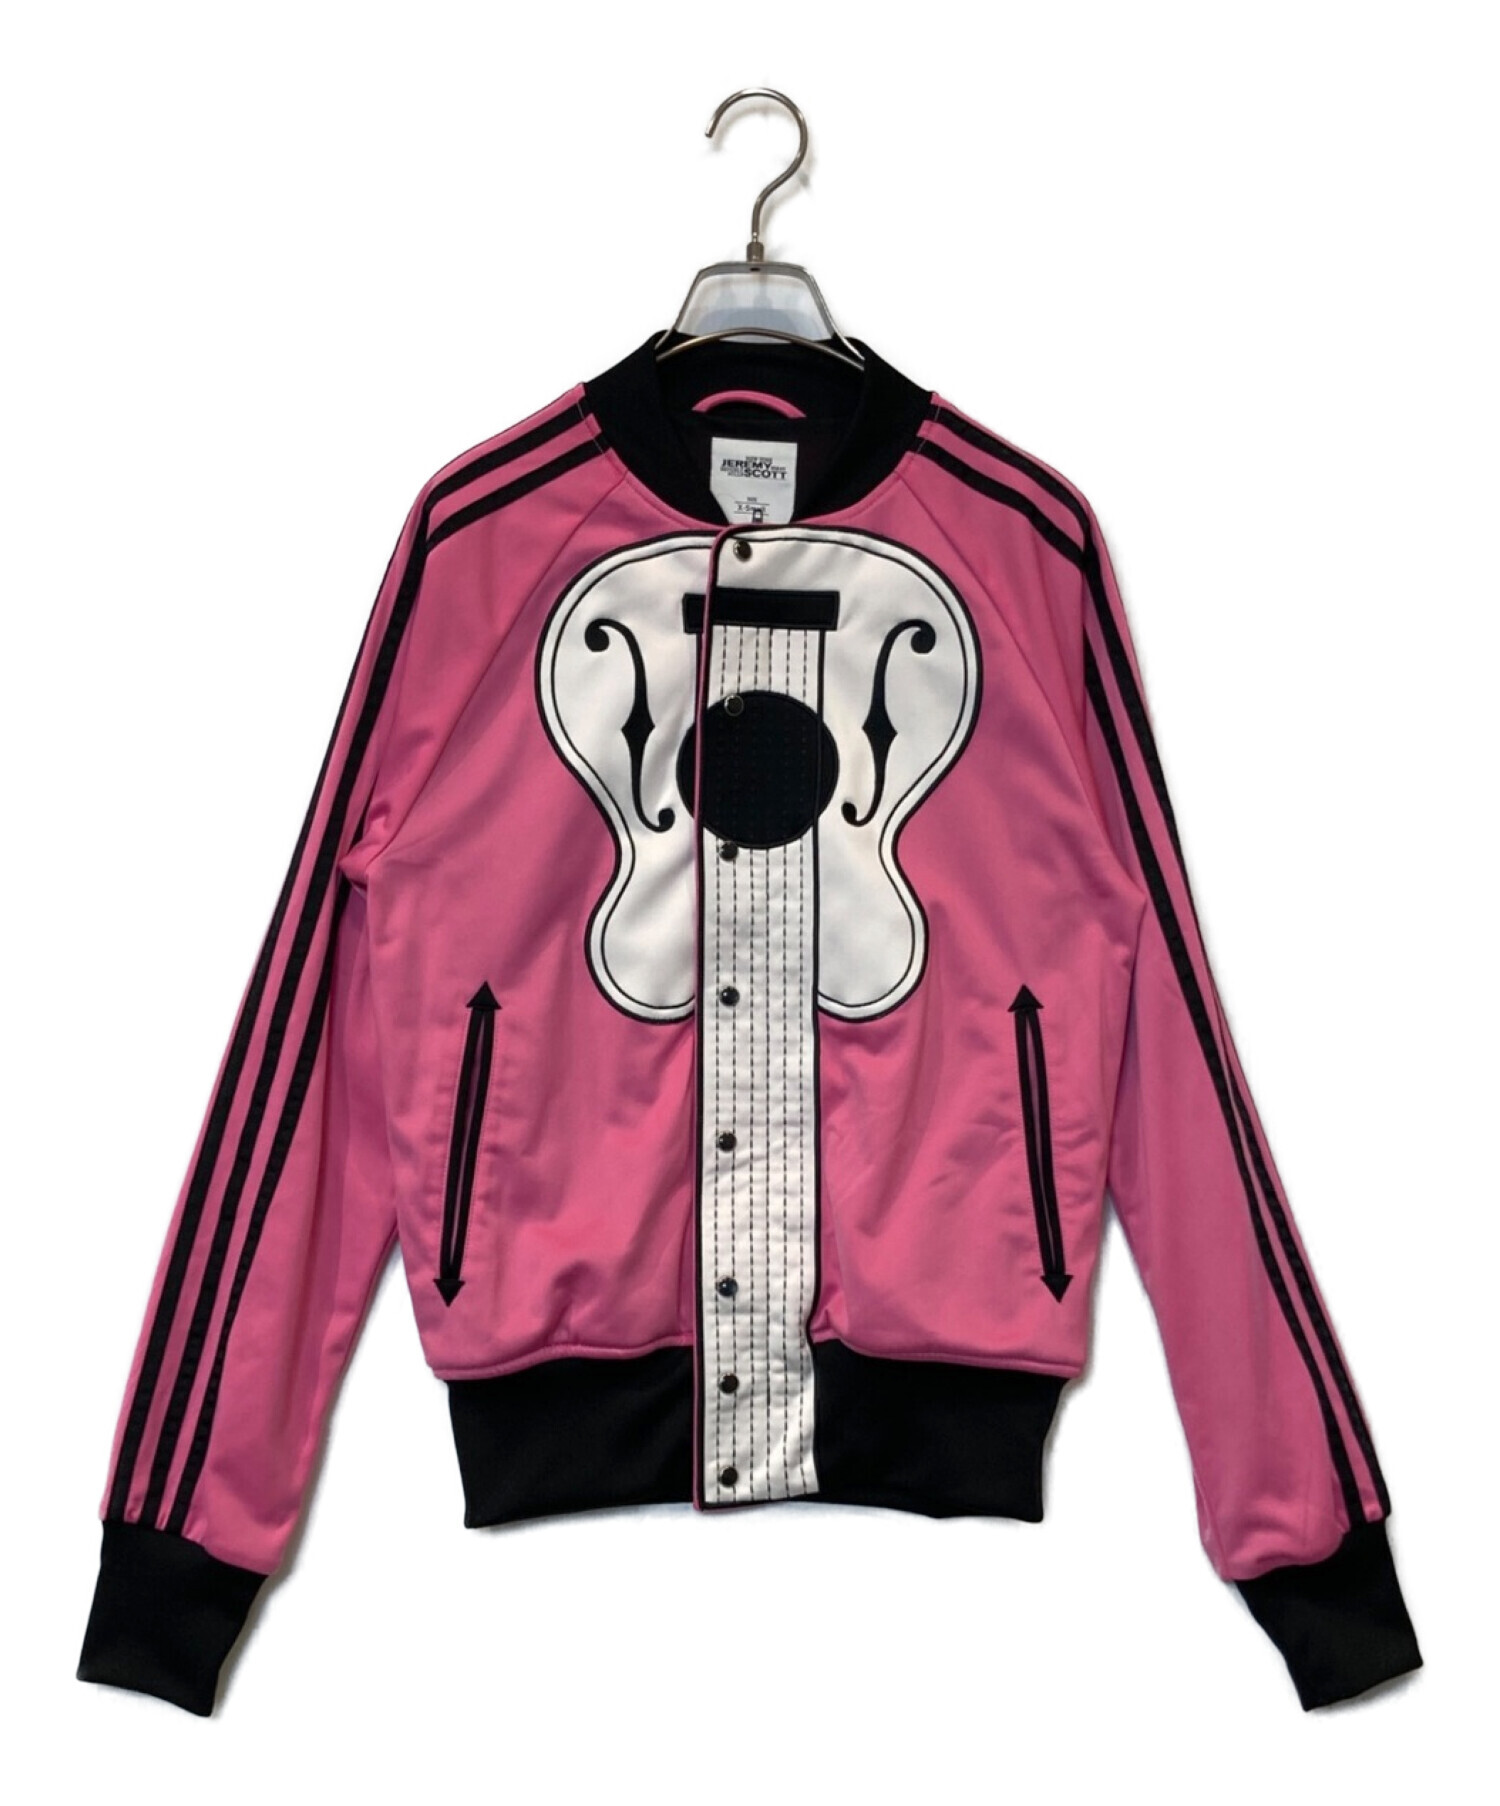 adidas (アディダス) JEREMY SCOTT (ジェレミースコット) コラボギター柄トラックジャケット ピンク サイズ:XS